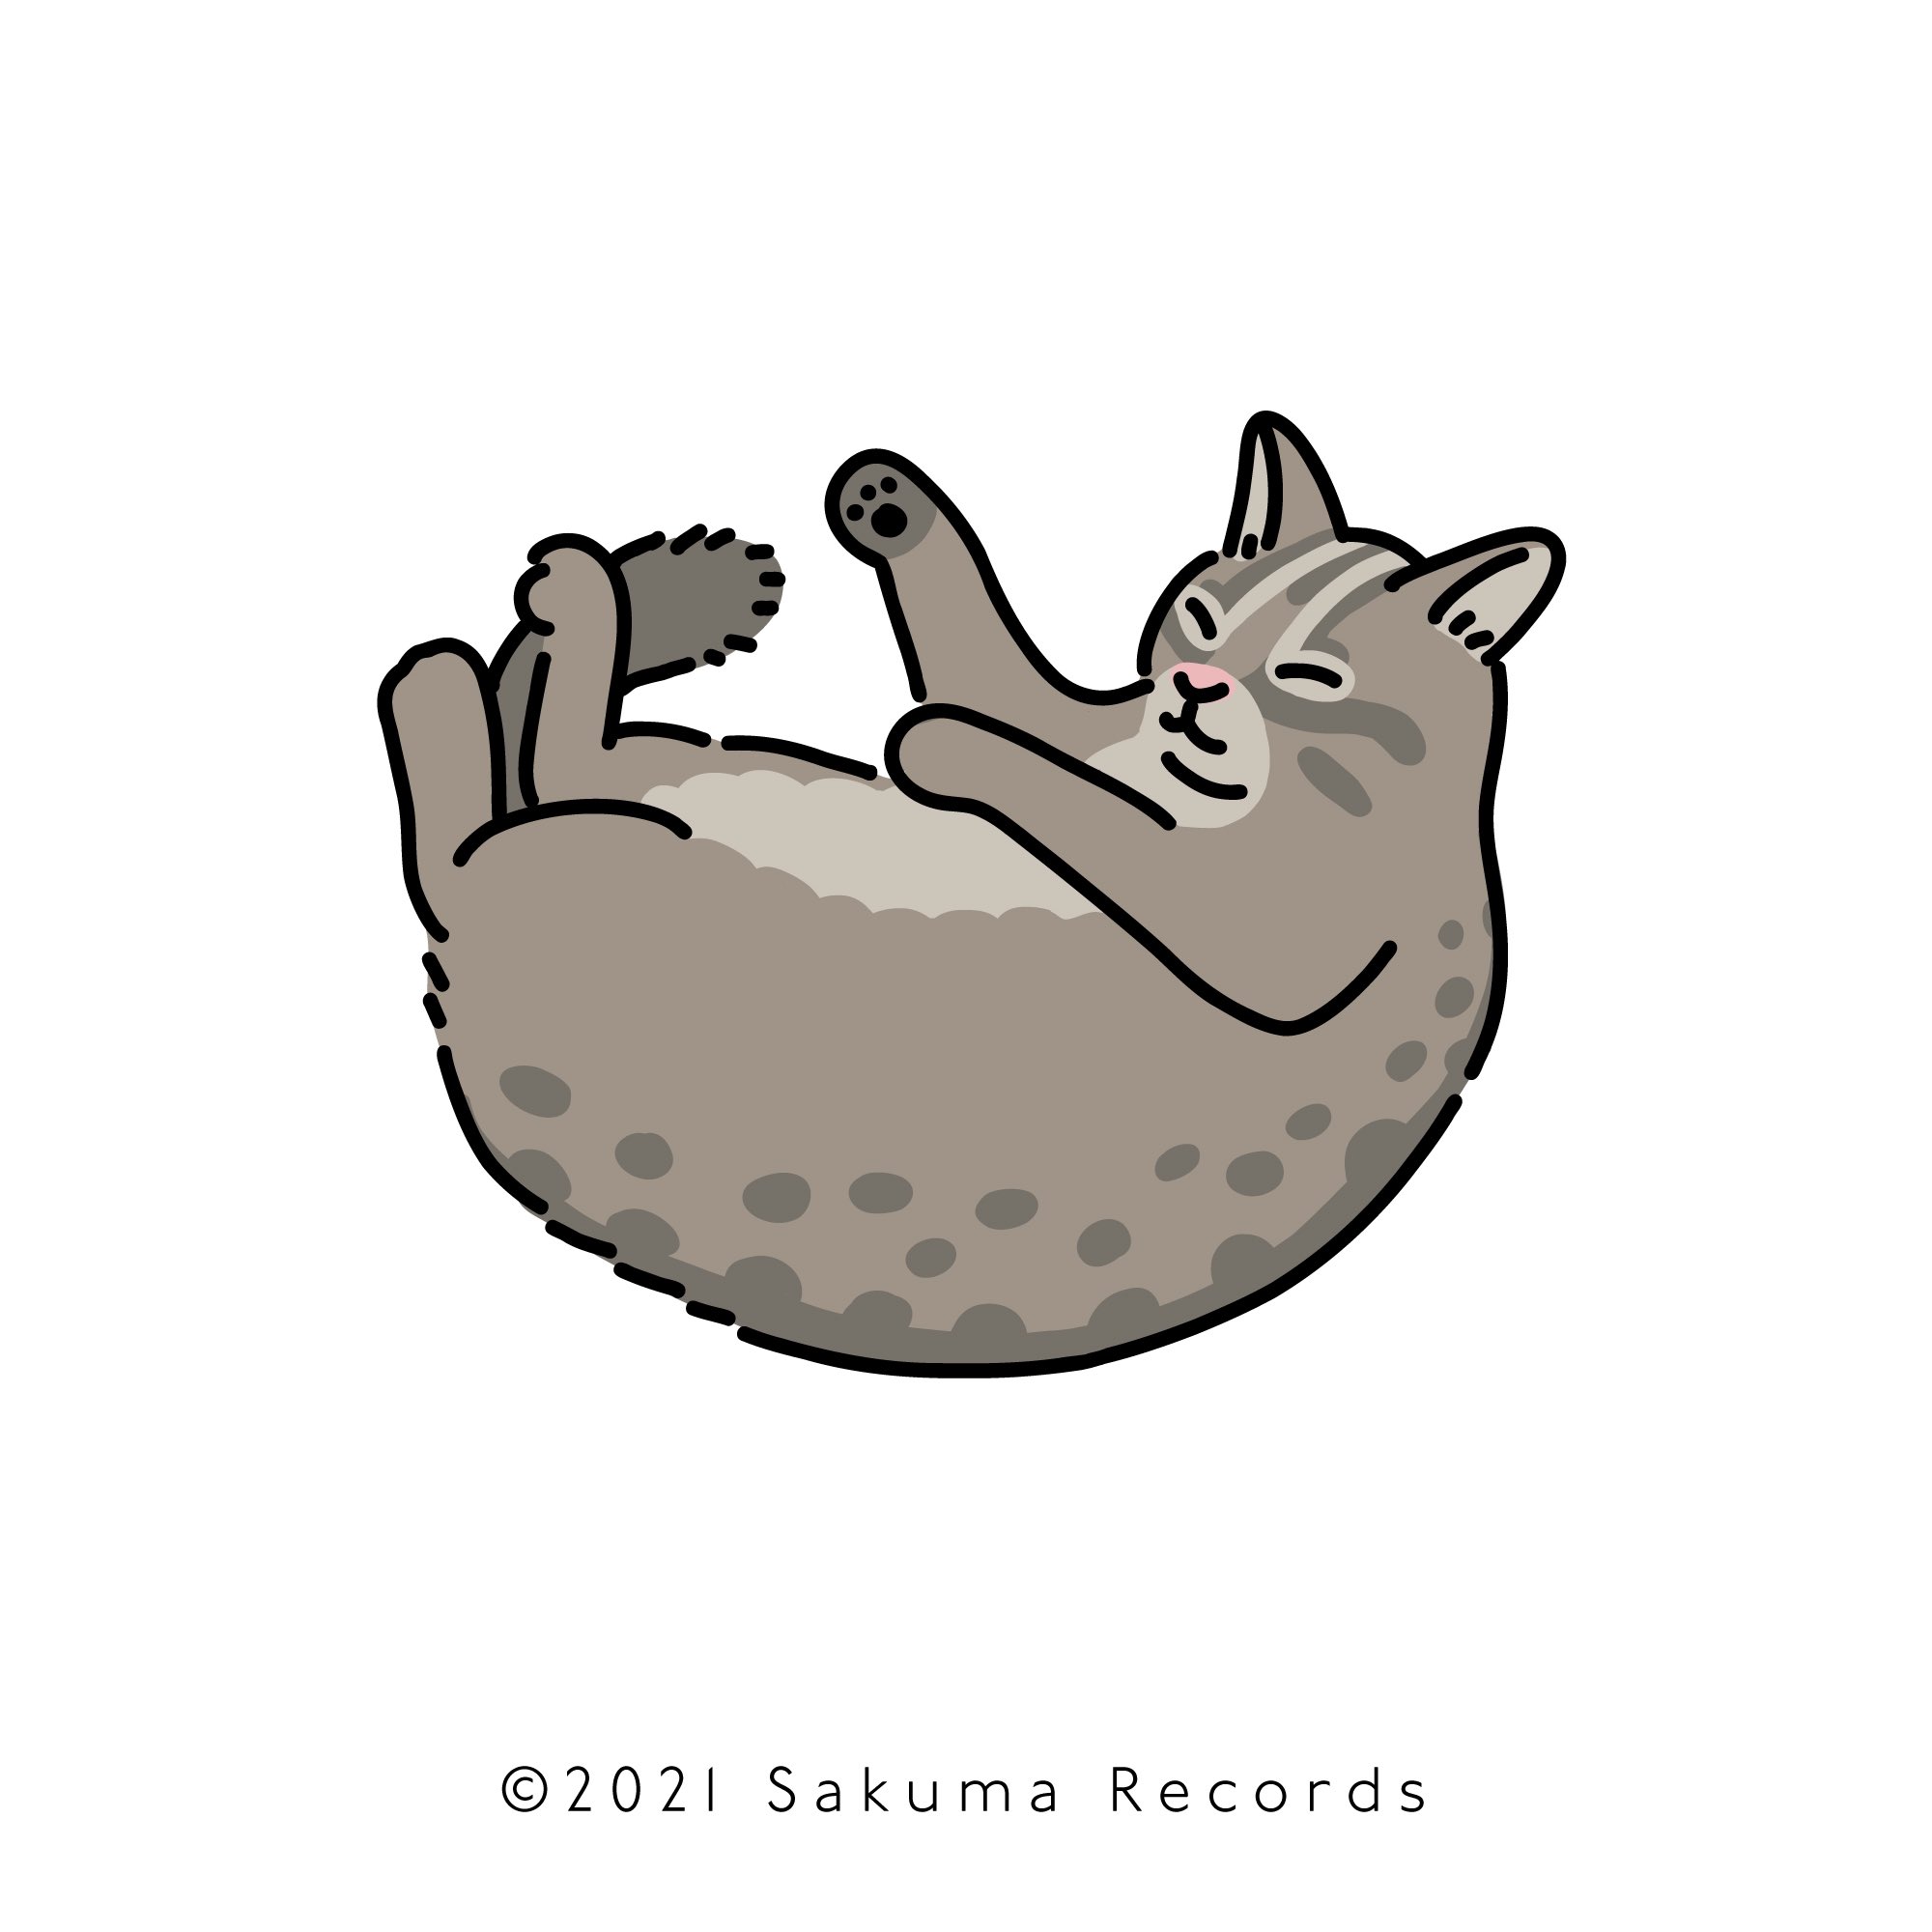 ヤマオユミ Sakuma Records グラフィックデザイナー 今日も猫ちゃんがおうちに入ってきてくれました カリカリをソファに置く の図 Adobefresco 落書き イラスト 猫絵 T Co Kn6a7nj63n Twitter